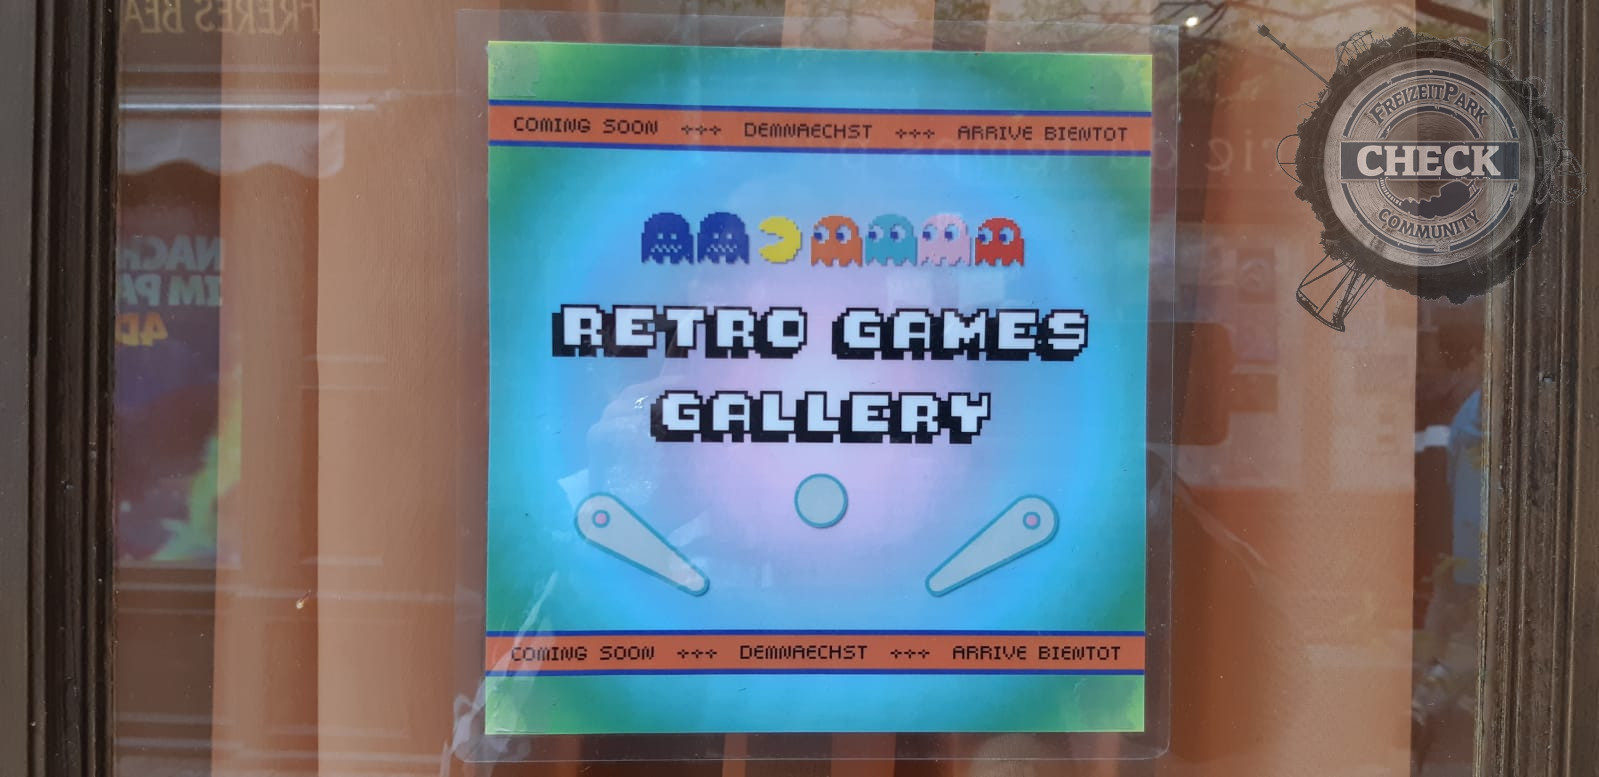 Retro Games Gallery